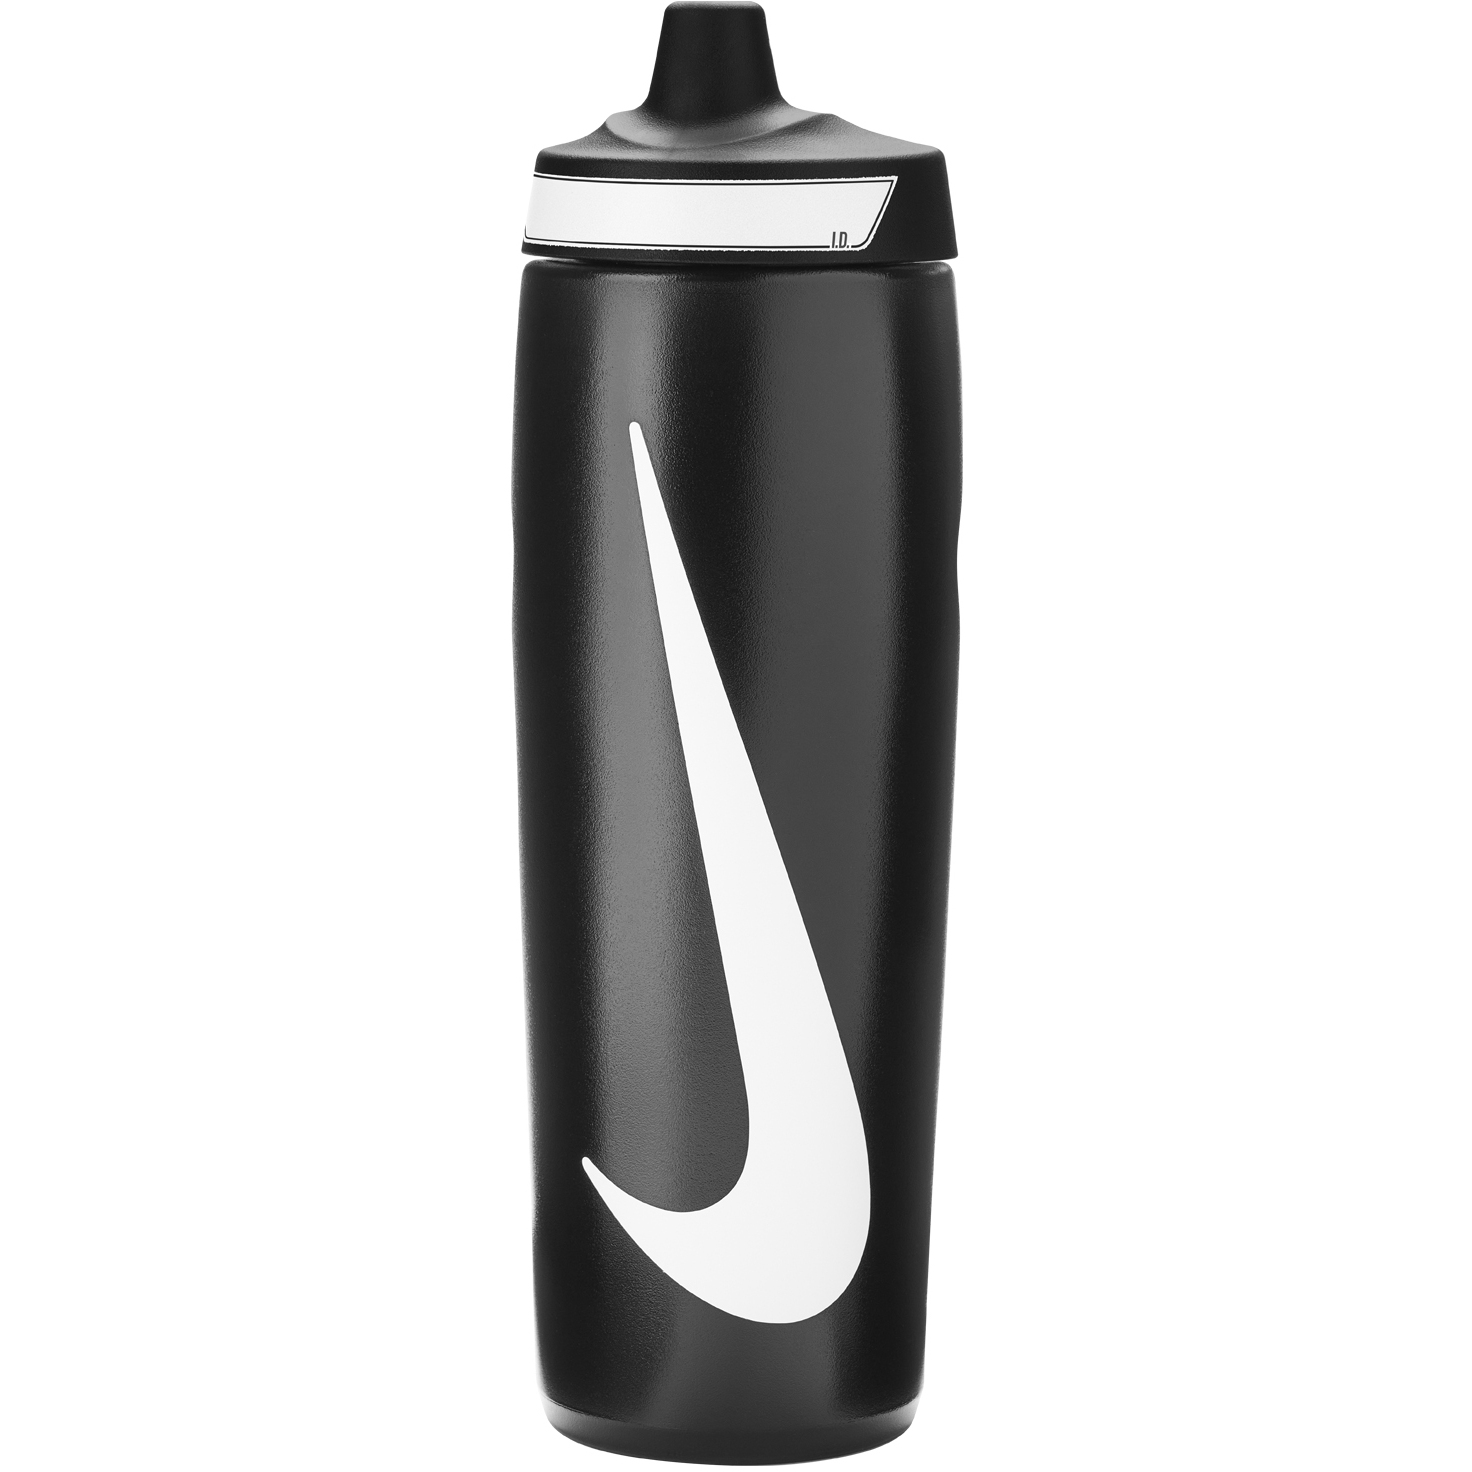 Produktbild von Nike Refuel Bottle Grip Sportflasche 24 oz / 709ml - schwarz/schwarz/weiß 091